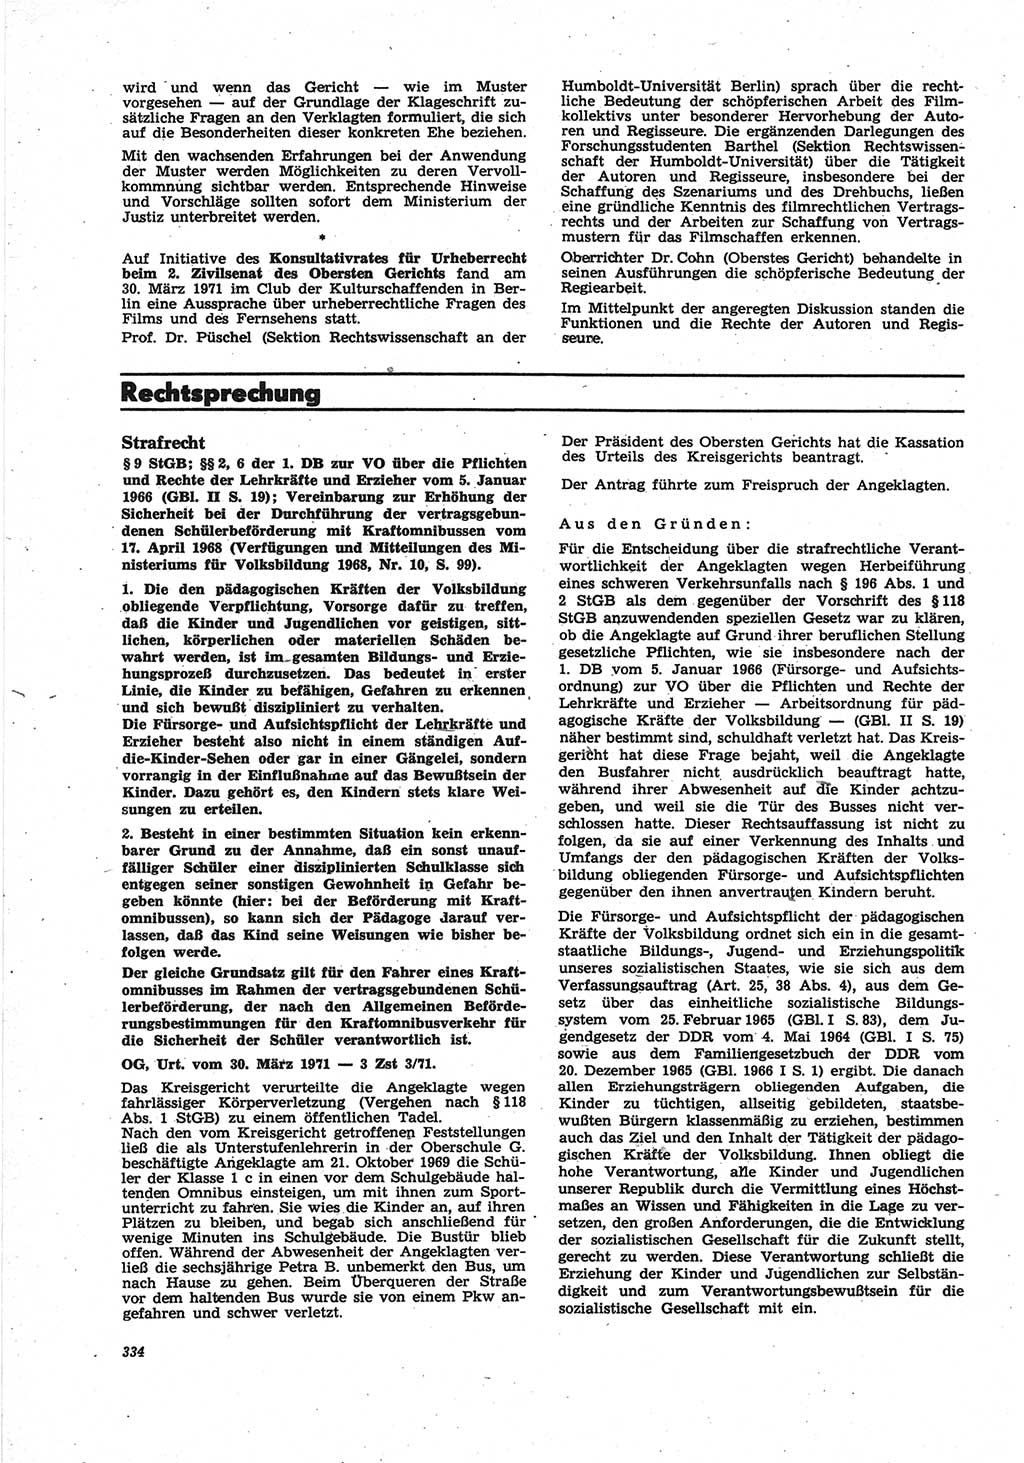 Neue Justiz (NJ), Zeitschrift für Recht und Rechtswissenschaft [Deutsche Demokratische Republik (DDR)], 25. Jahrgang 1971, Seite 334 (NJ DDR 1971, S. 334)